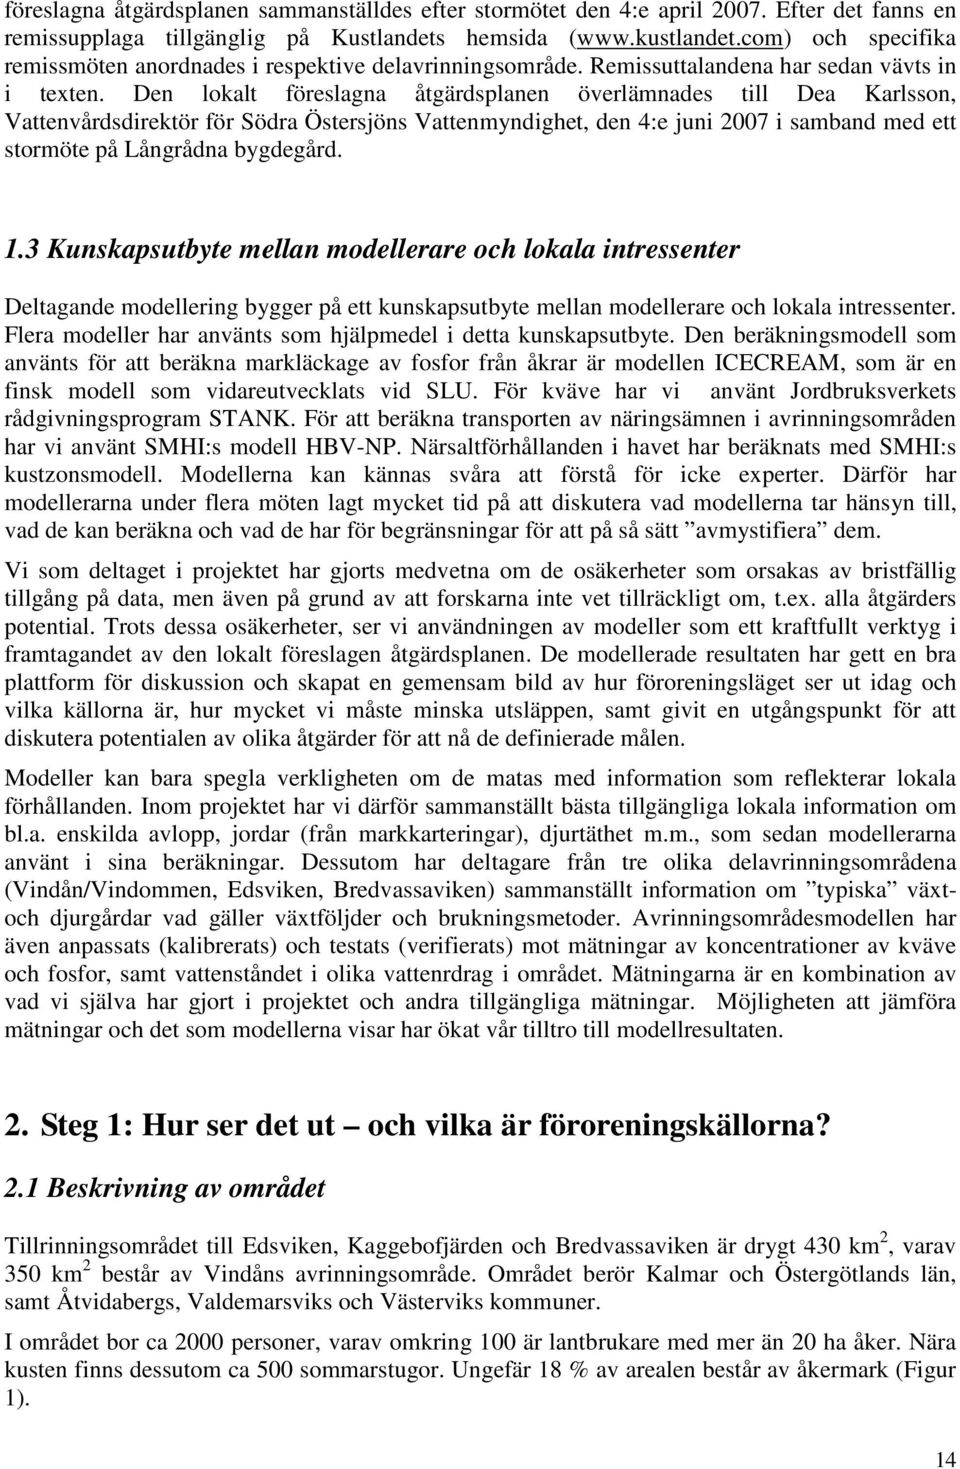 Den lokalt föreslagna åtgärdsplanen överlämnades till Dea Karlsson, Vattenvårdsdirektör för Södra Östersjöns Vattenmyndighet, den 4:e juni 2007 i samband med ett stormöte på Långrådna bygdegård. 1.